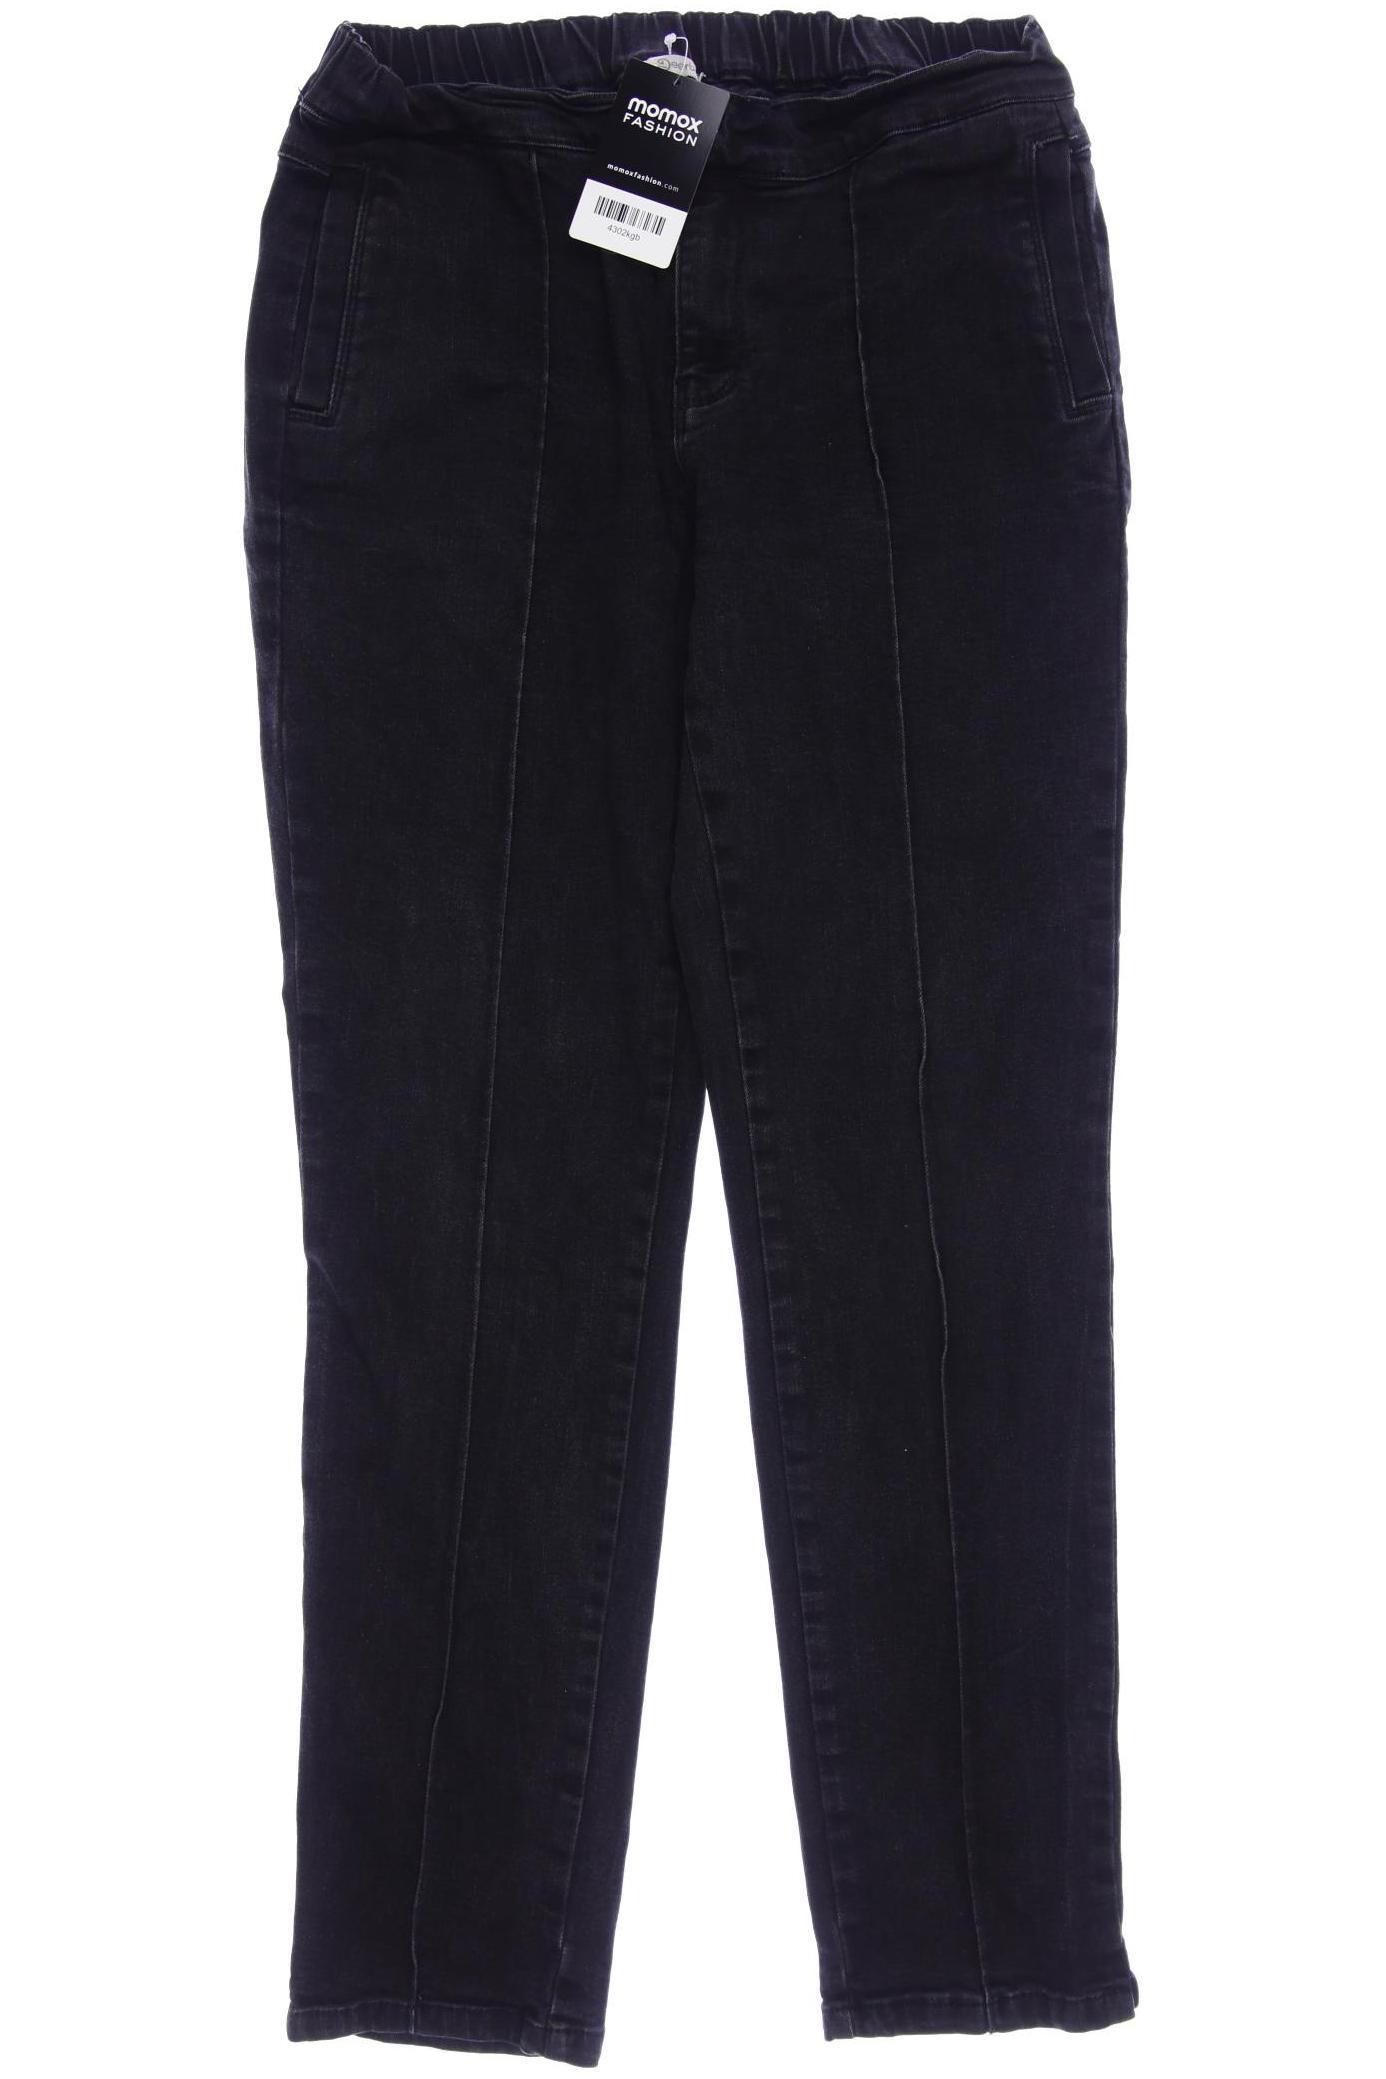 Deerberg Damen Jeans, schwarz, Gr. 40 von Deerberg